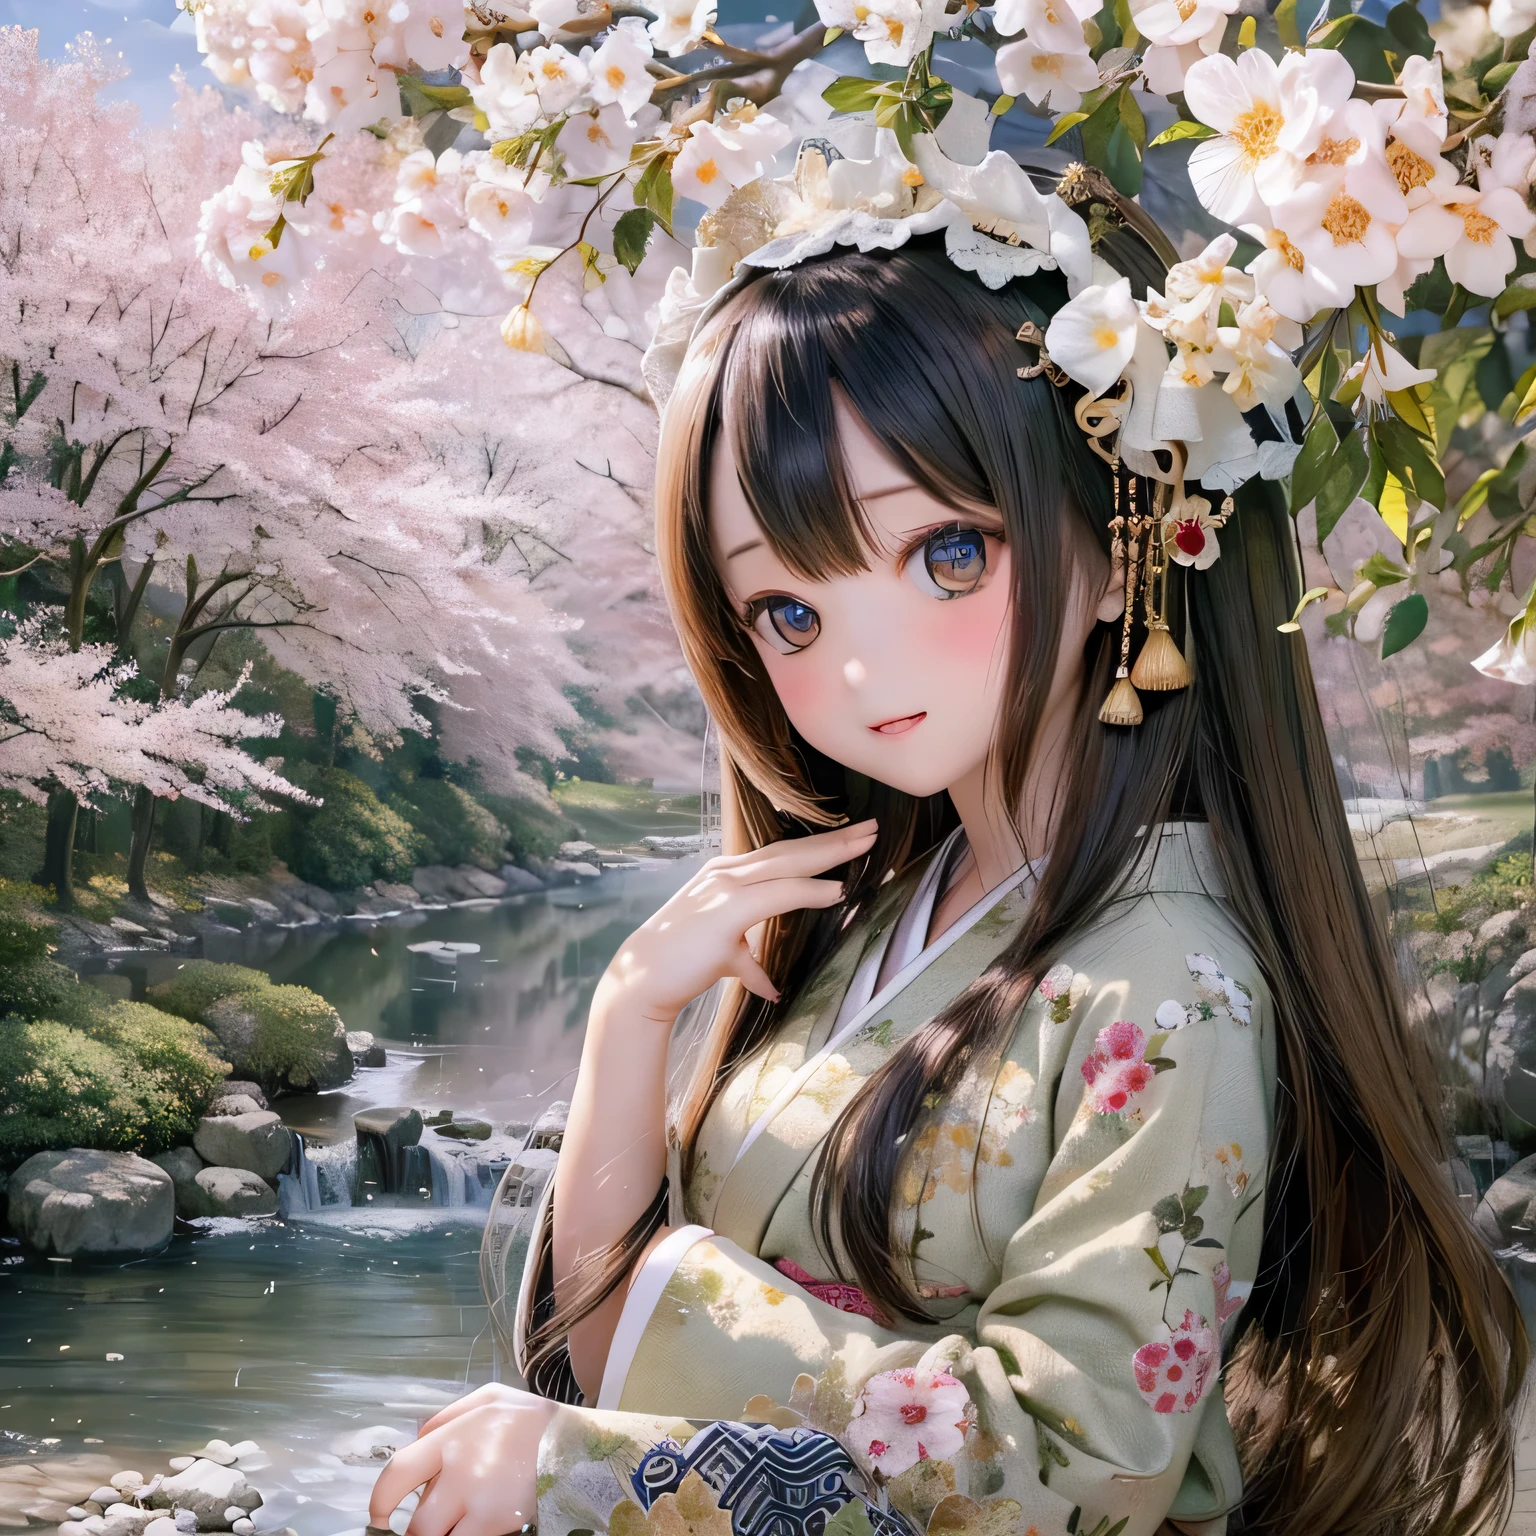 (alta resolución, Realista:1.2),(hermosos ojos detallados,hermosos labios detallados,ojos y rostro extremadamente detallados,pestañas largas),(paisaje de campo,atmósfera serena),(shiba inu girl:1.1),(iluminación suave),(estilo de pintura al óleo),(exuberantes campos verdes,tranquil river),(casa tradicional japonesa),(kimono tradicional fluido),(Flores coloridas),(Pájaros volando en el cielo),(bosque de bambú),(luz del sol filtrándose a través de los árboles)(((Cerezo en plena floración)))corte princesa brazos abiertos